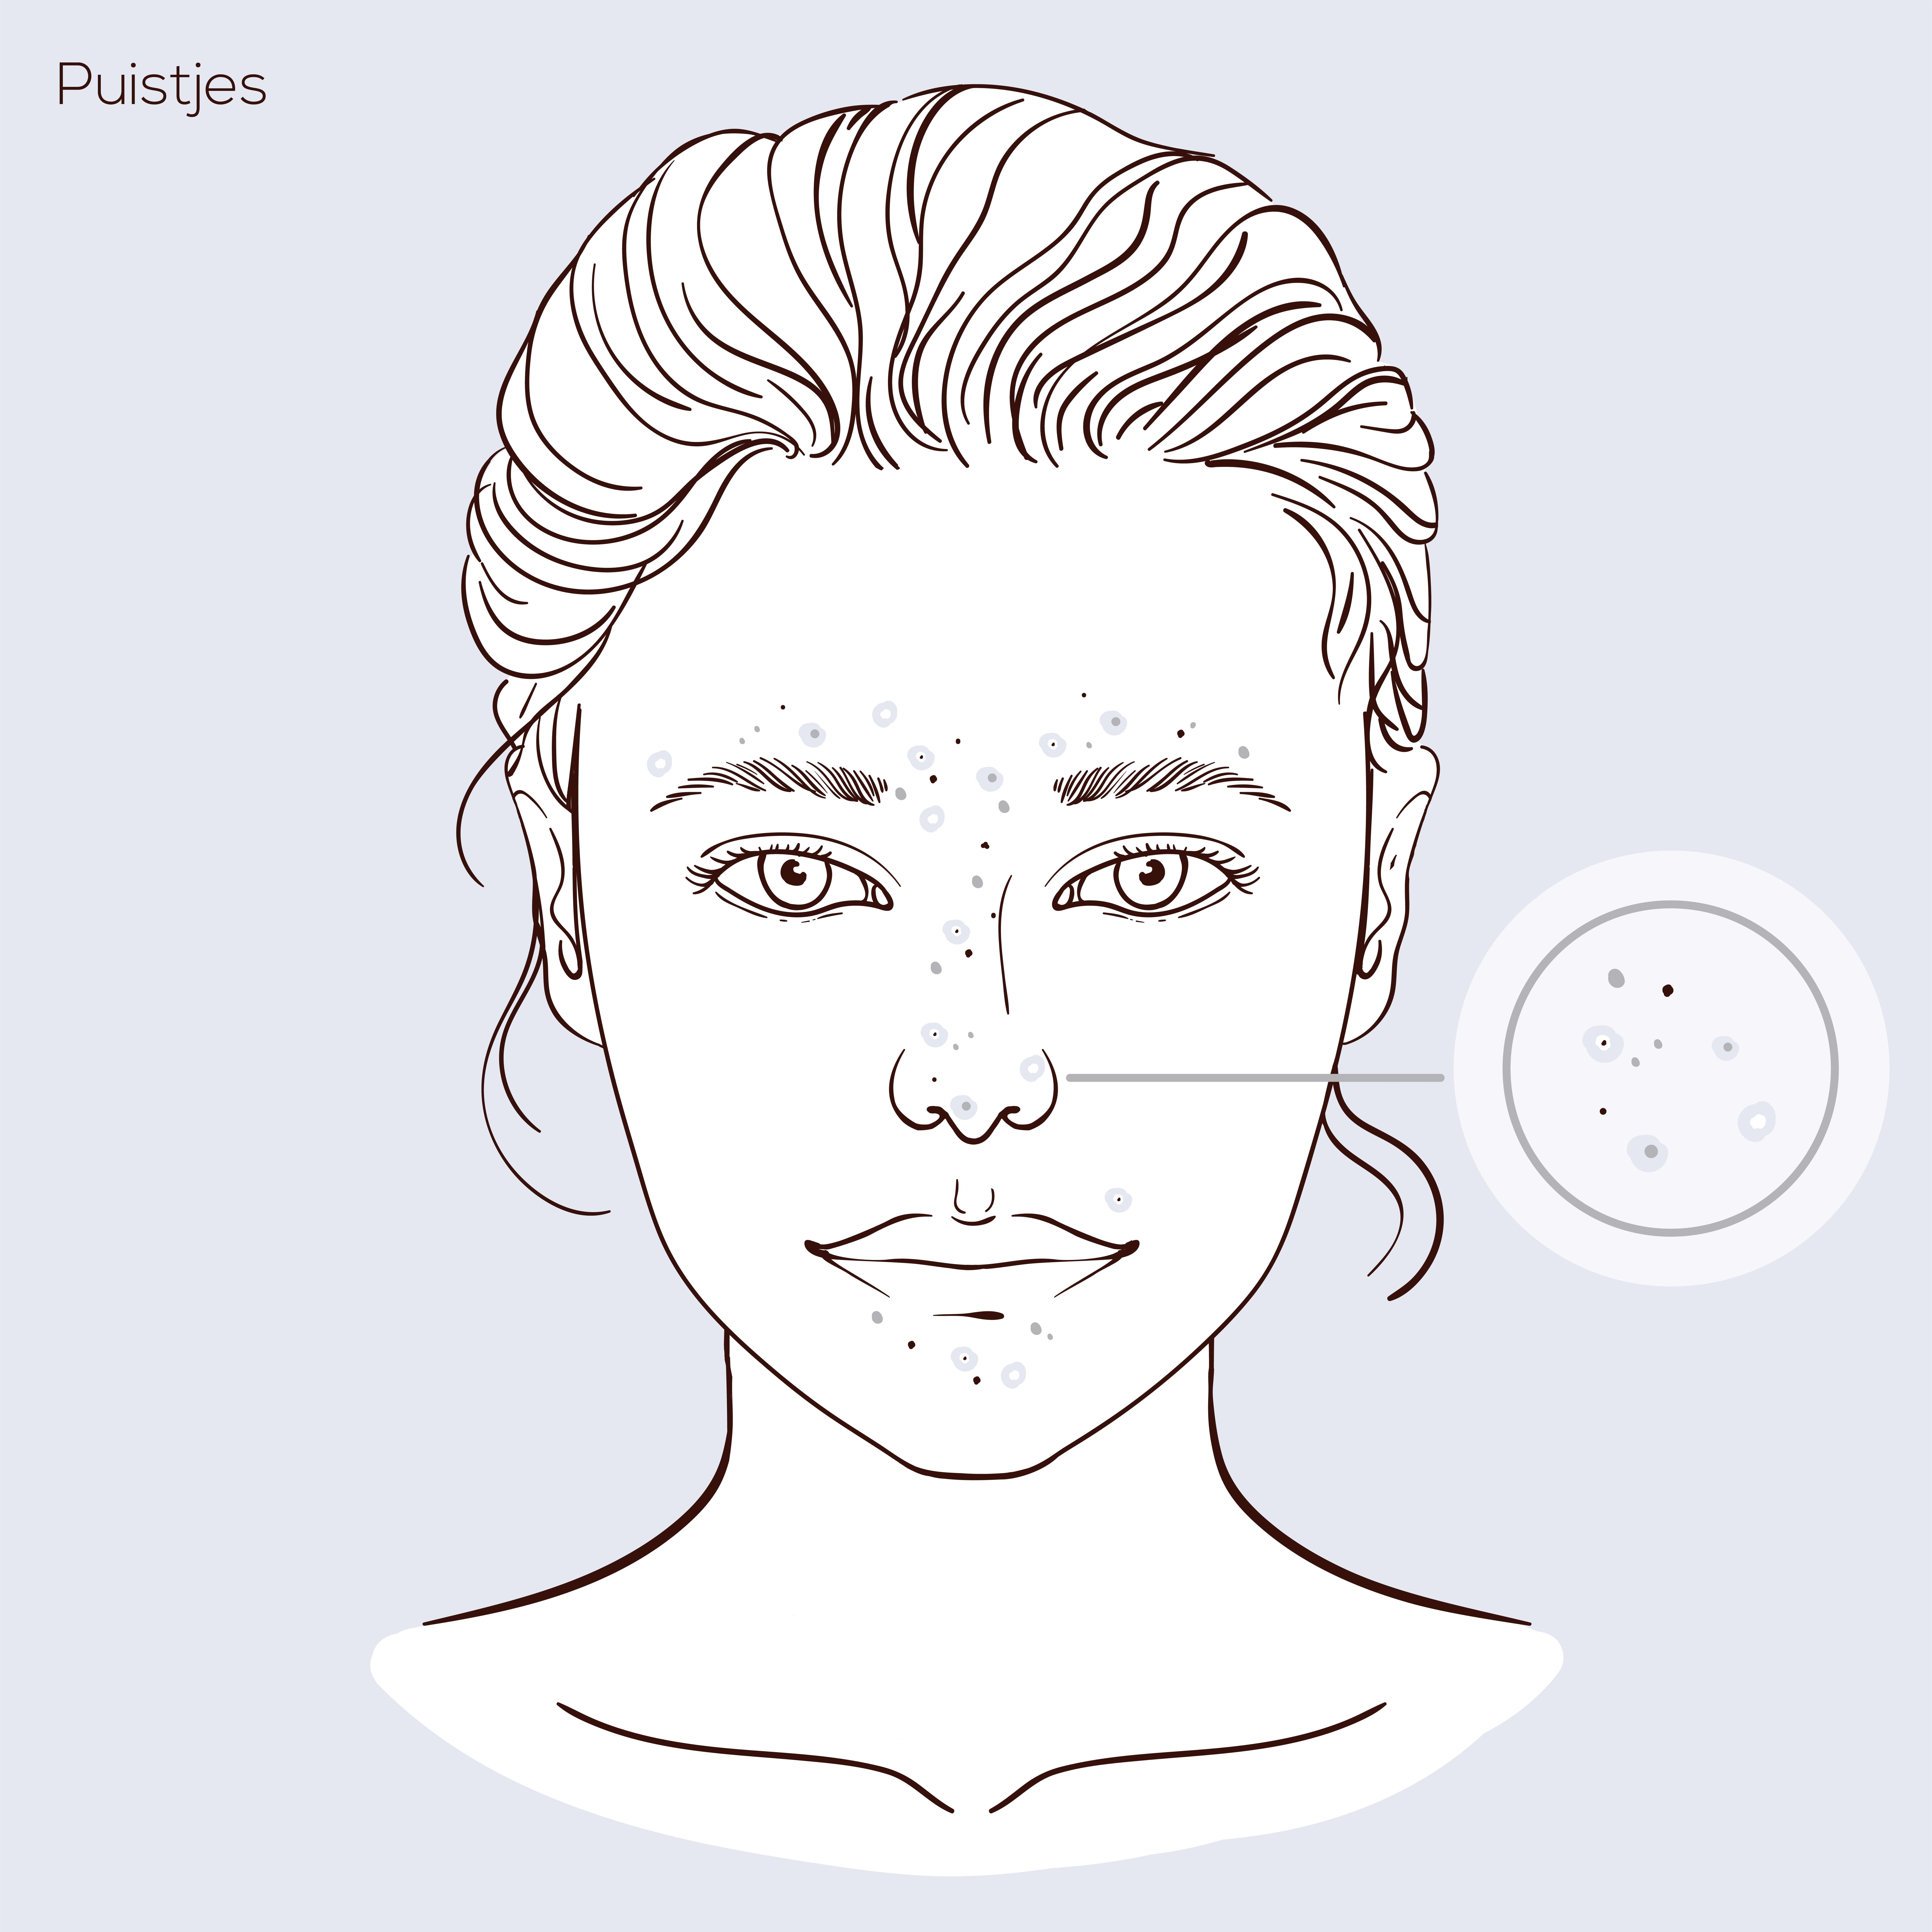 Illustratie van gezicht met huidprobleem puistjes